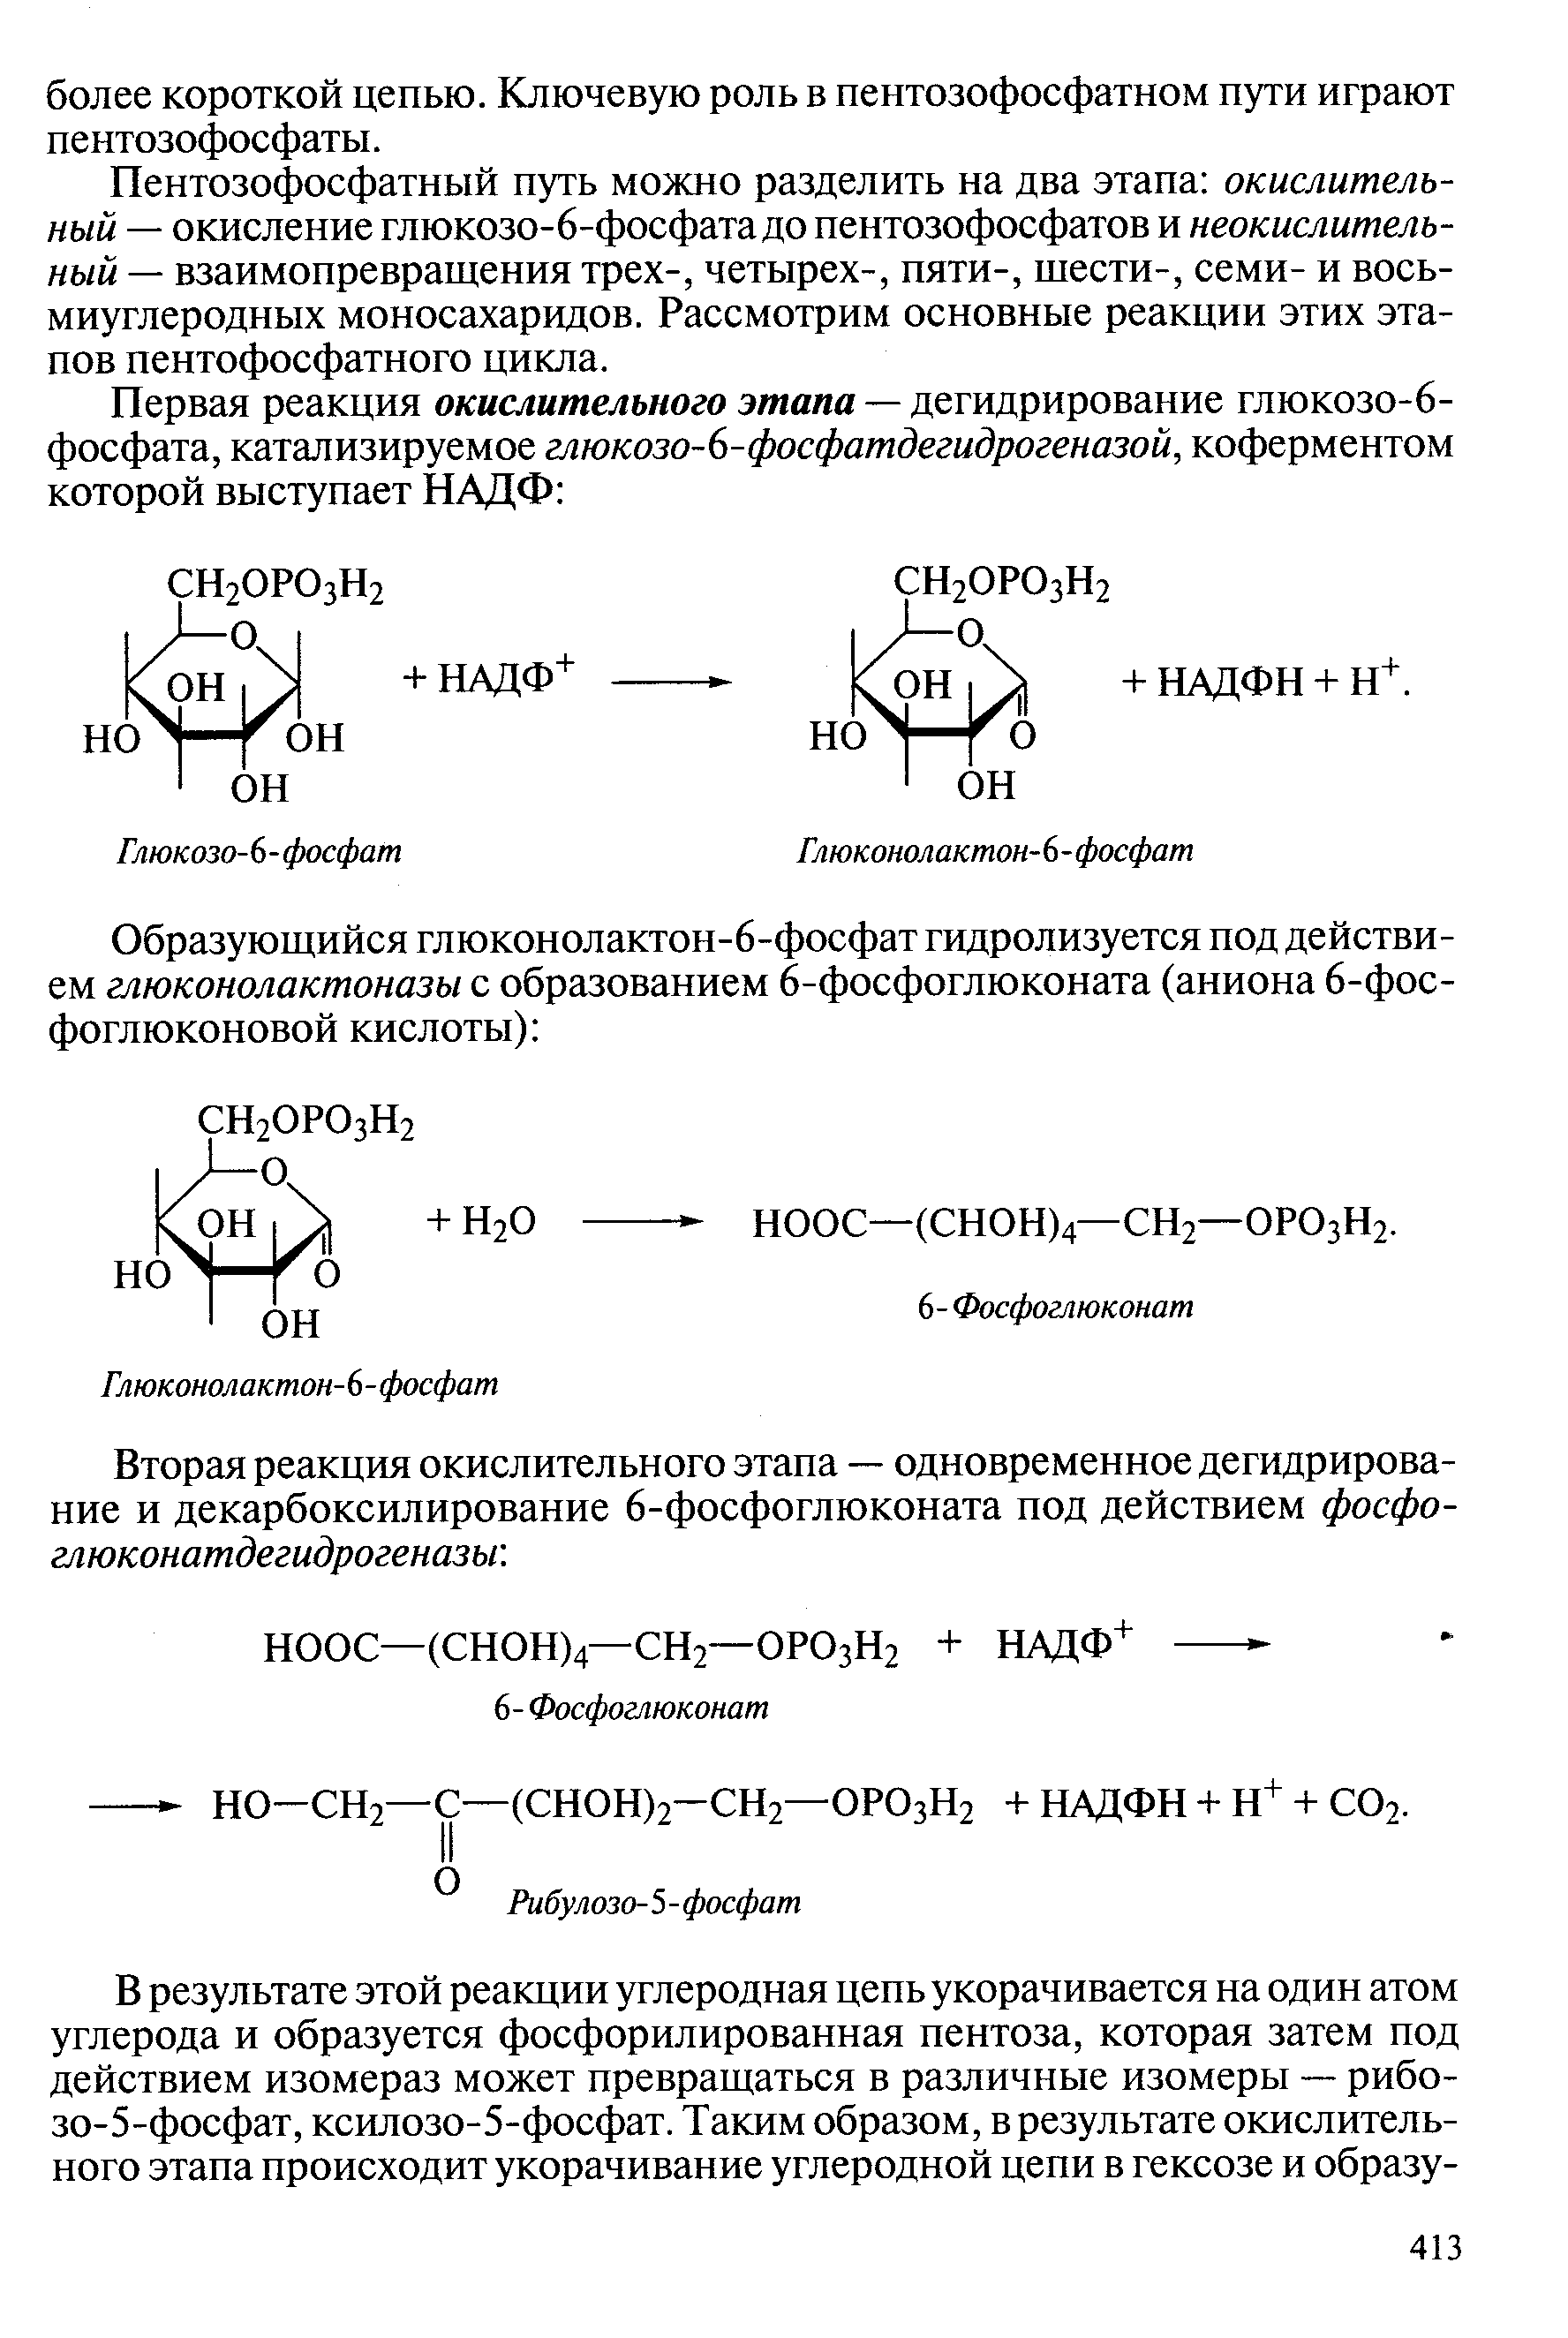 Пентозофосфатный путь можно разделить на два этапа окислительный — окисление глюкозо-6-фосфата до пентозофосфатов и неокислительный — взаимопревращения трех-, четырех-, пяти-, шести-, семи- и восьмиуглеродных моносахаридов. Рассмотрим основные реакции этих этапов пентофосфатного цикла.